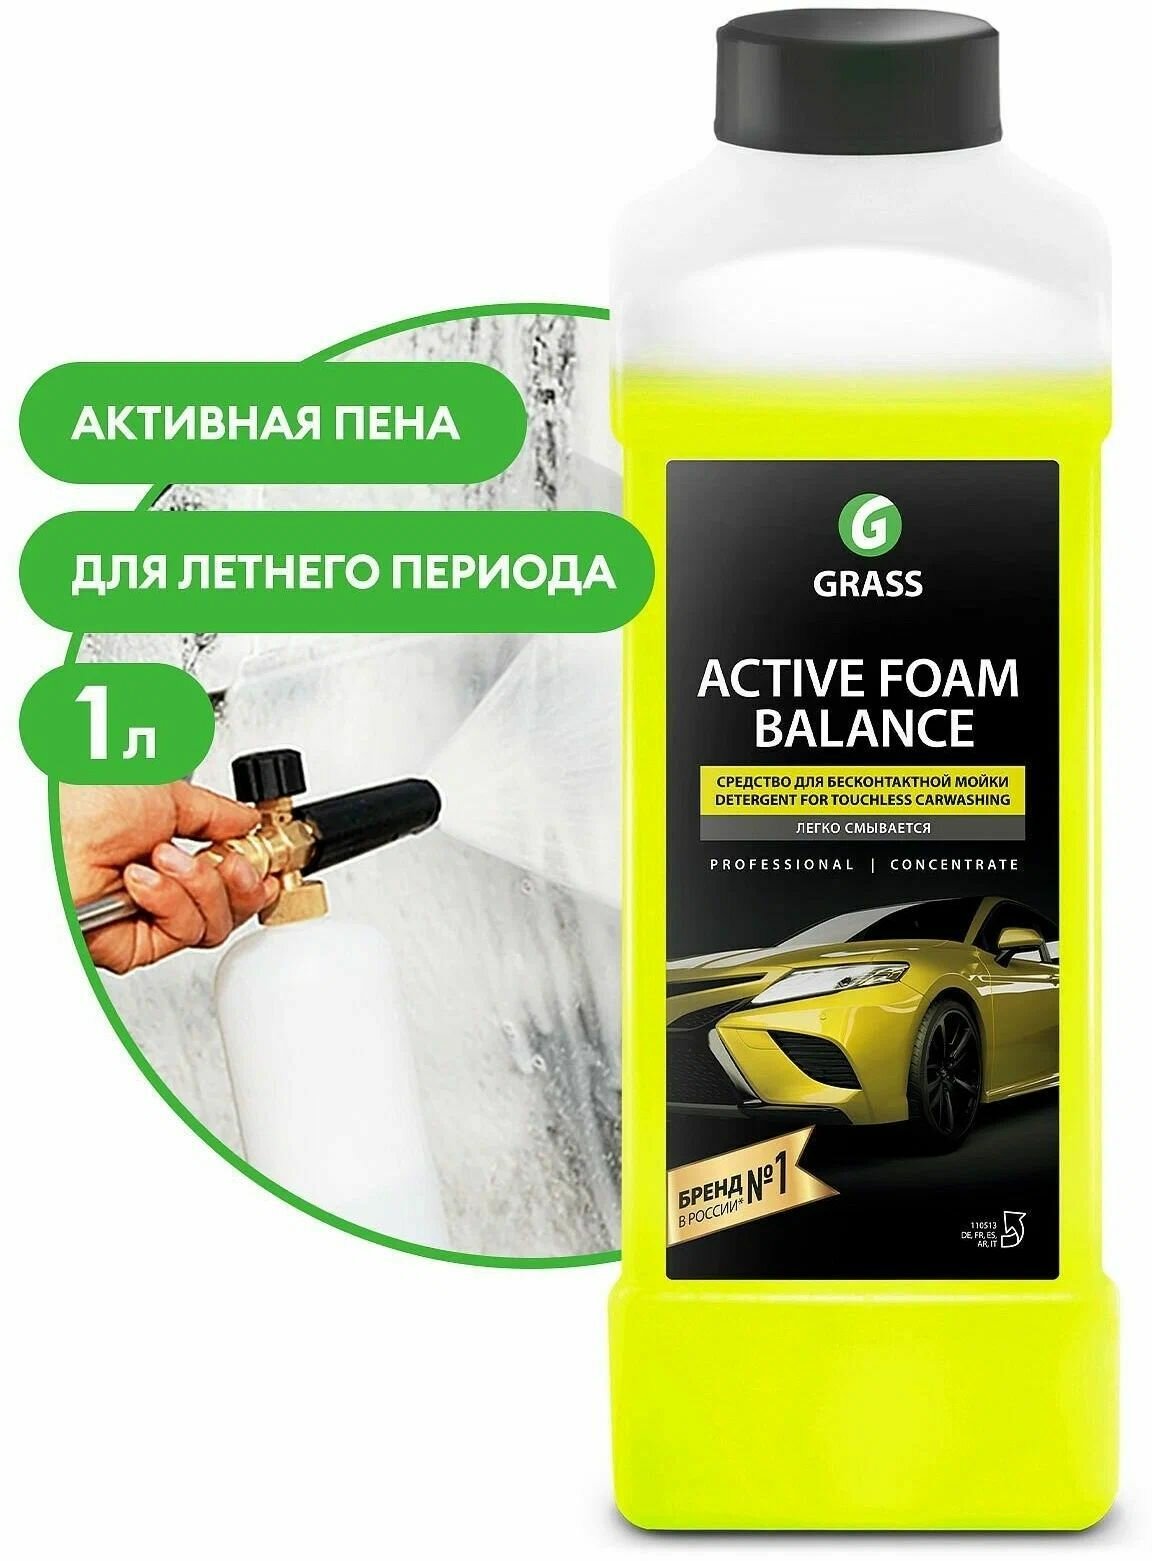 Активная пена "Active Foam Balance" новинка